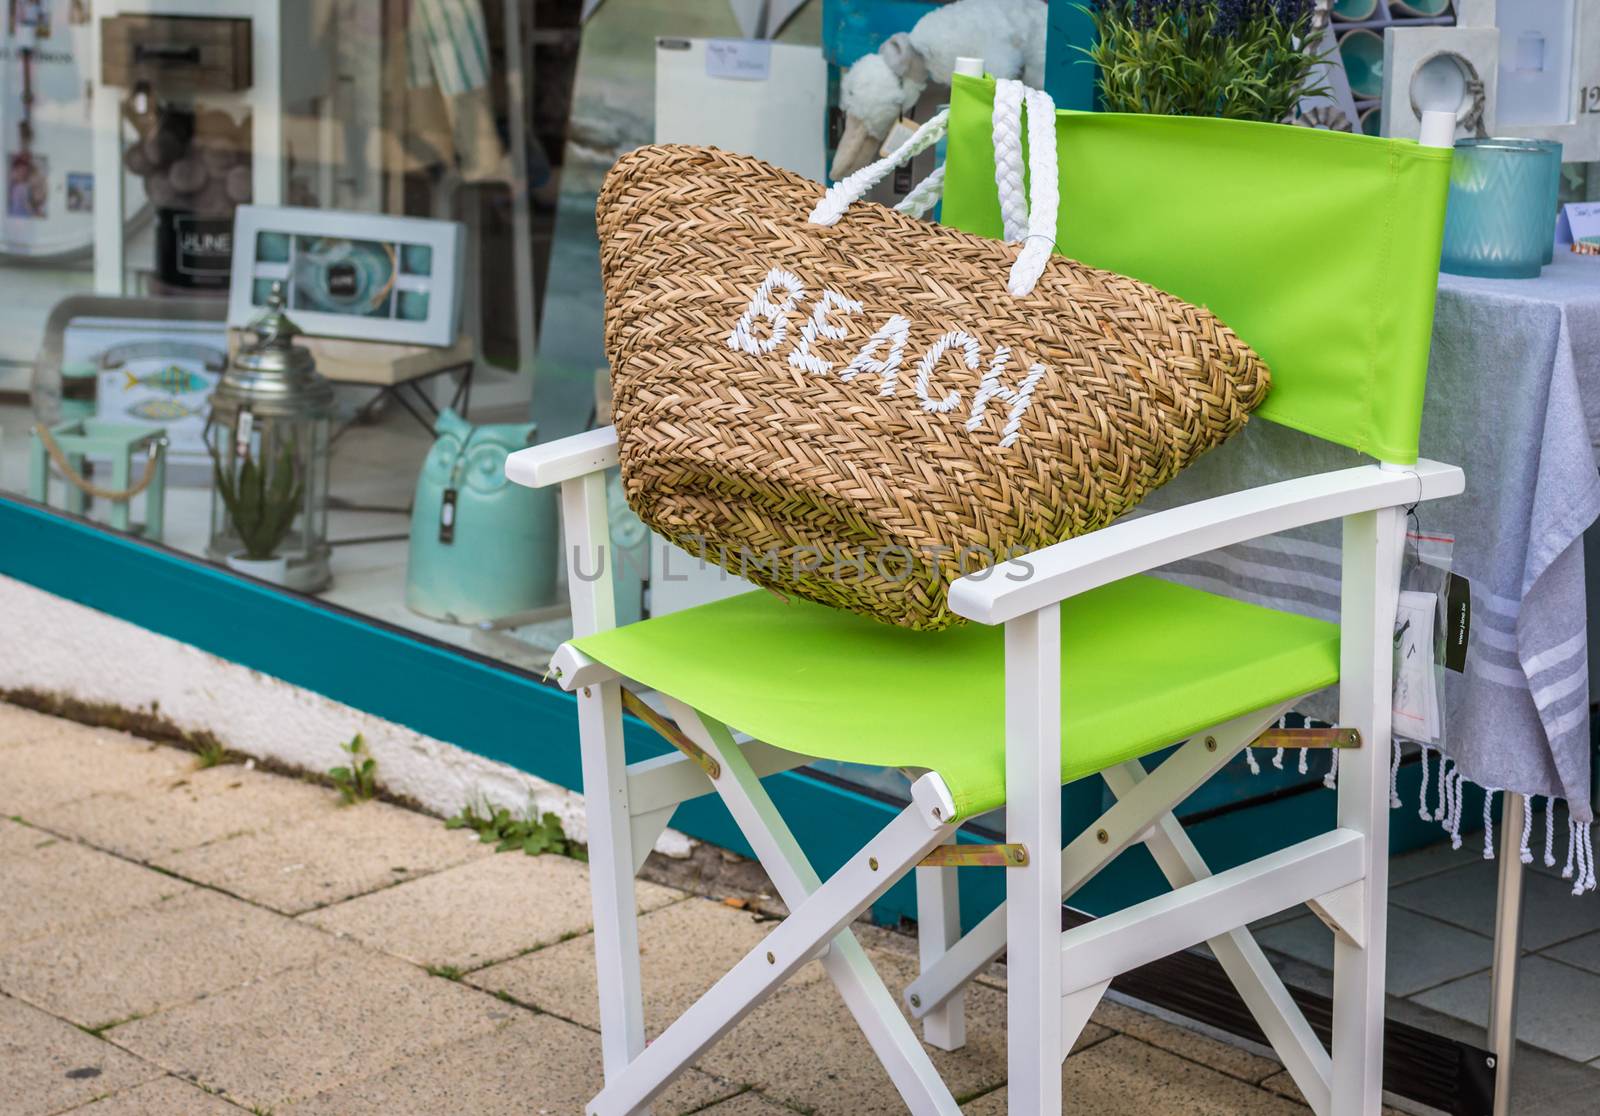 Beach bag on a green Chair on the street